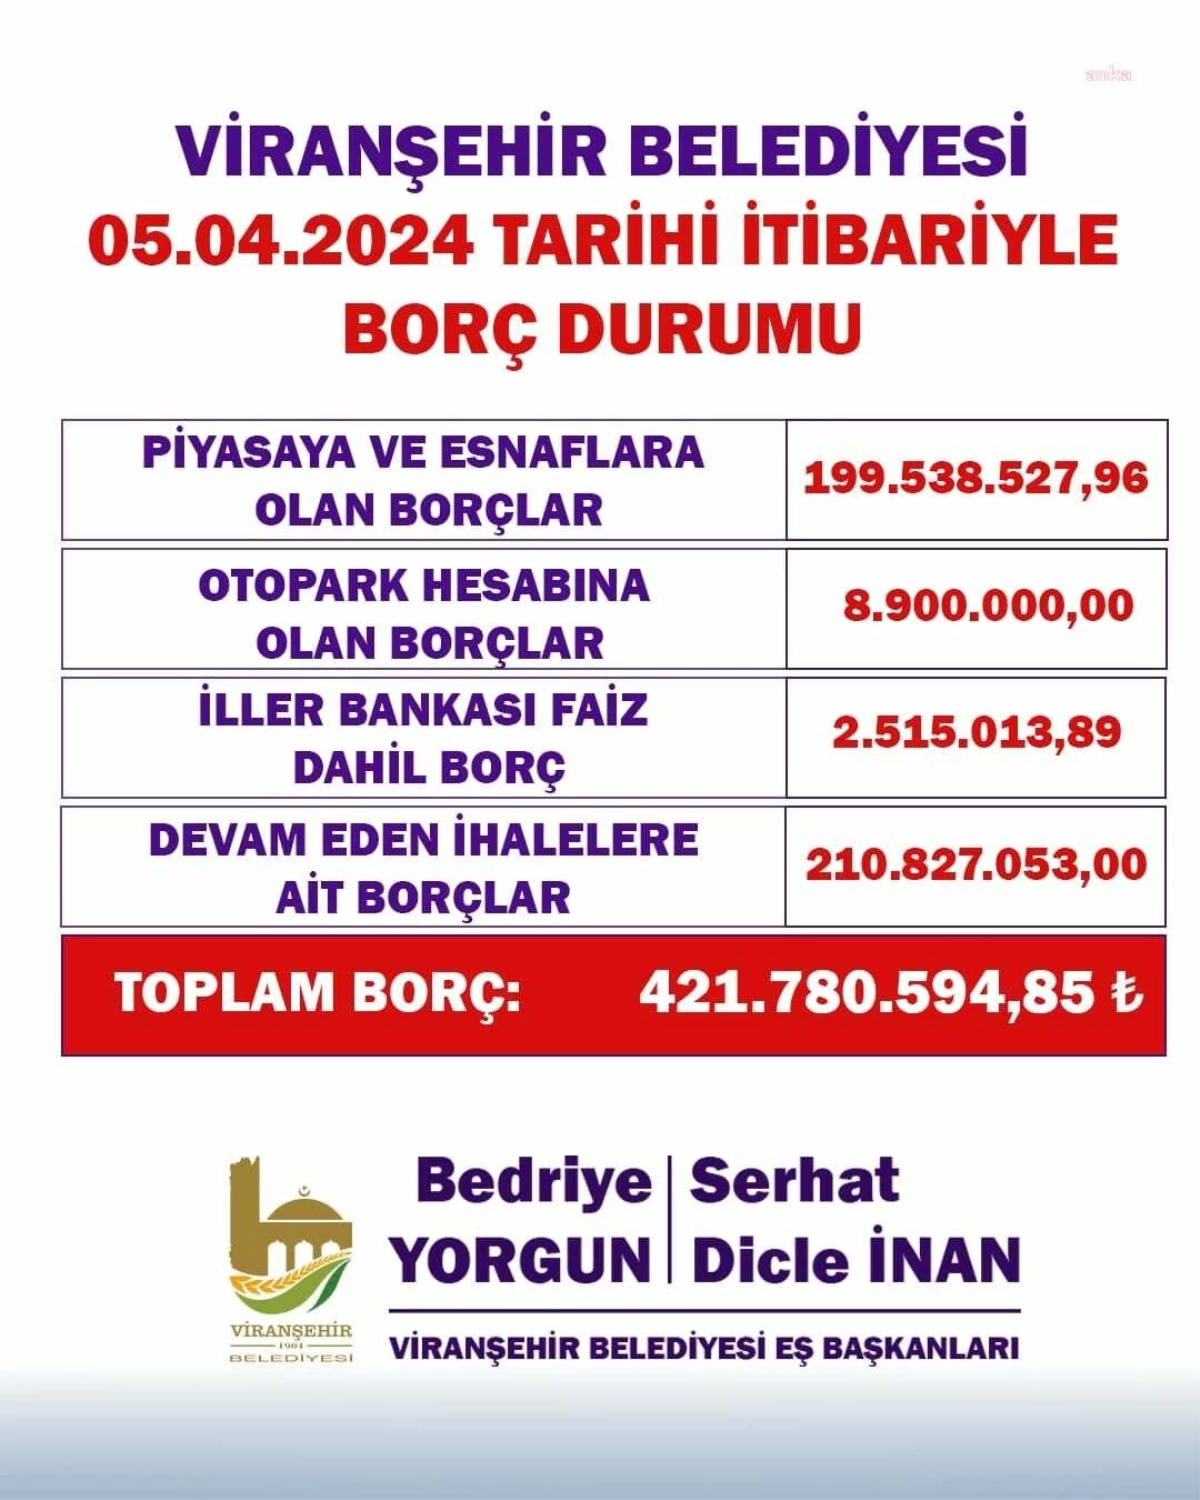 Viranşehir Belediyesi\'nin borcu 421 milyon TL